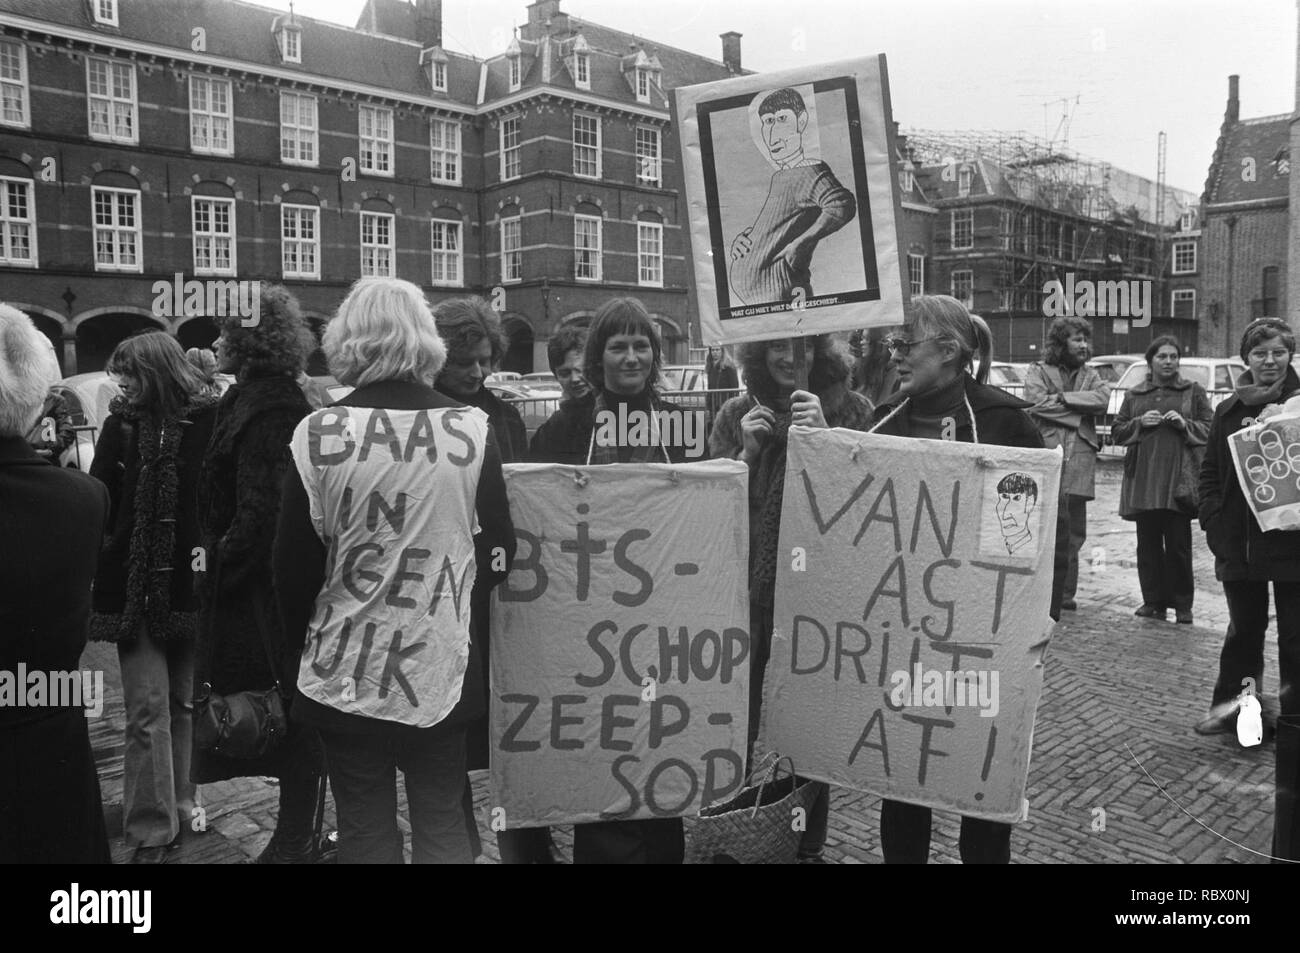 Abortus-demonstratie op Binnenhof, voorstanders van abort (oa met bord van zw, Bestanddeelnr 927-5497. Stock Photo